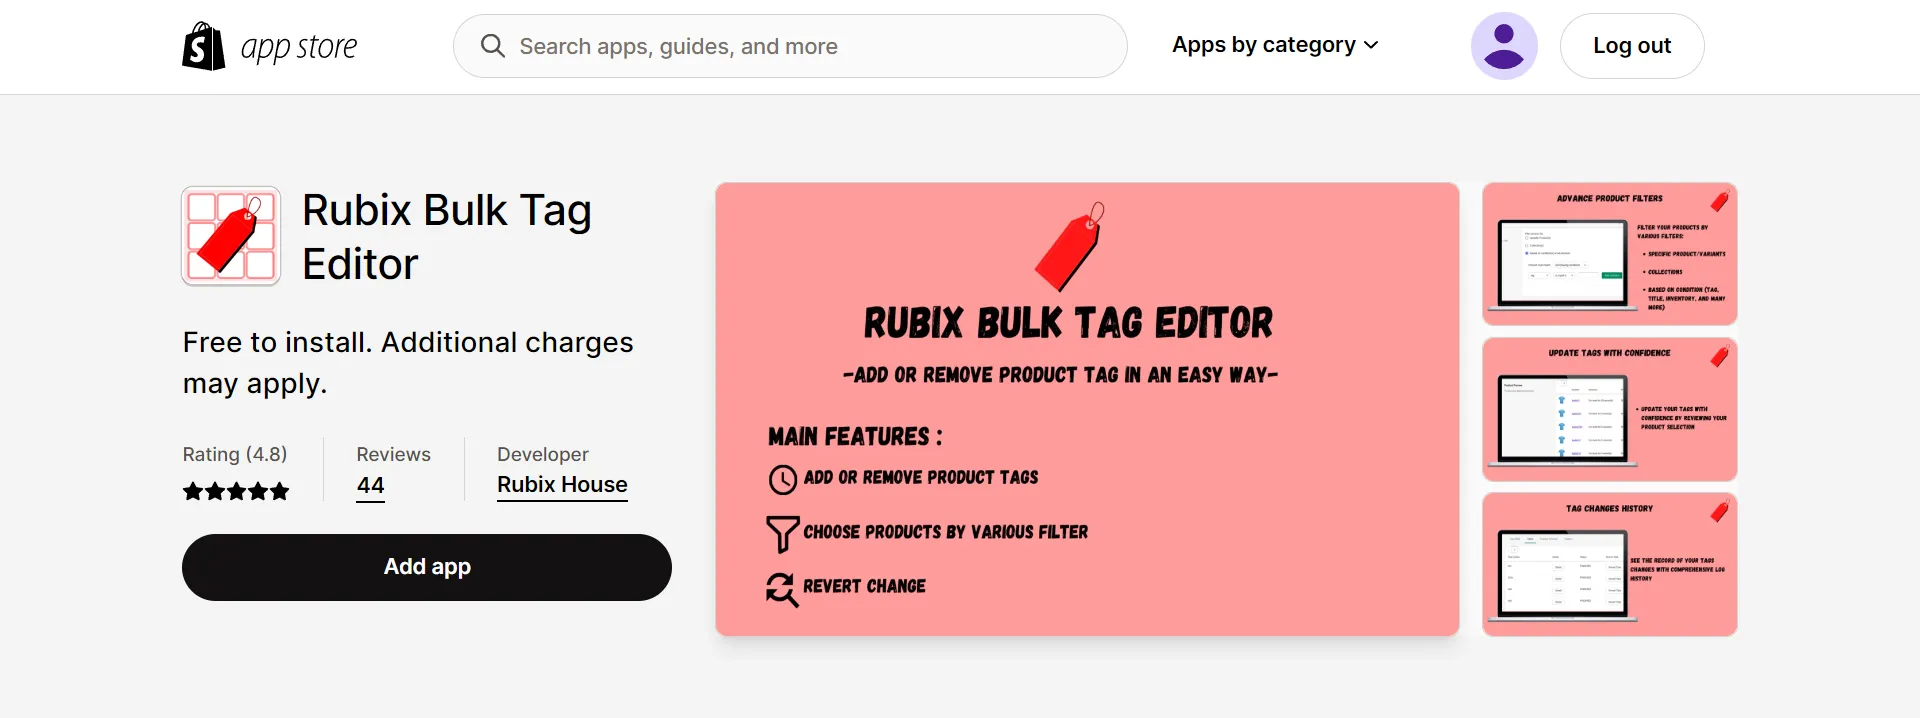 Rubix bulk tag editor app